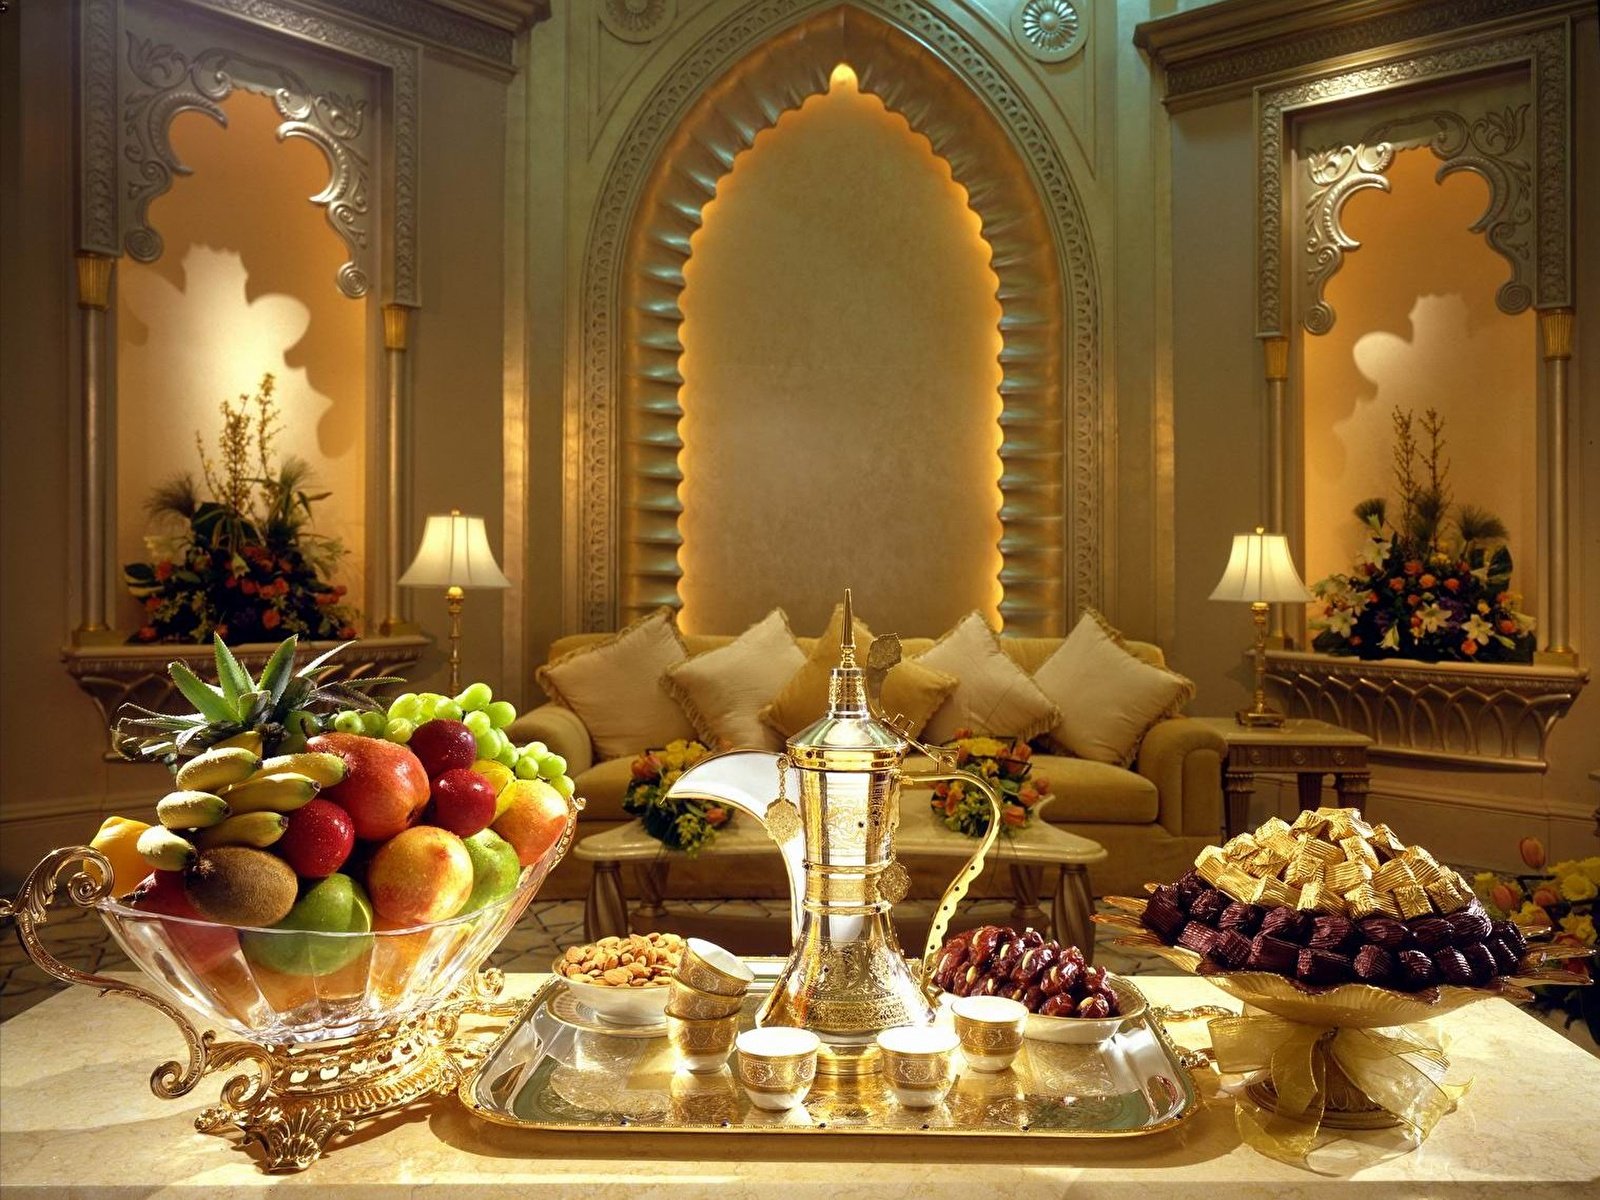 Восточное время вечер. Вечер в арабском стиле. Шикарный стол с едой. Добрый вечер в Восточном стиле. Новый год в арабском стиле.